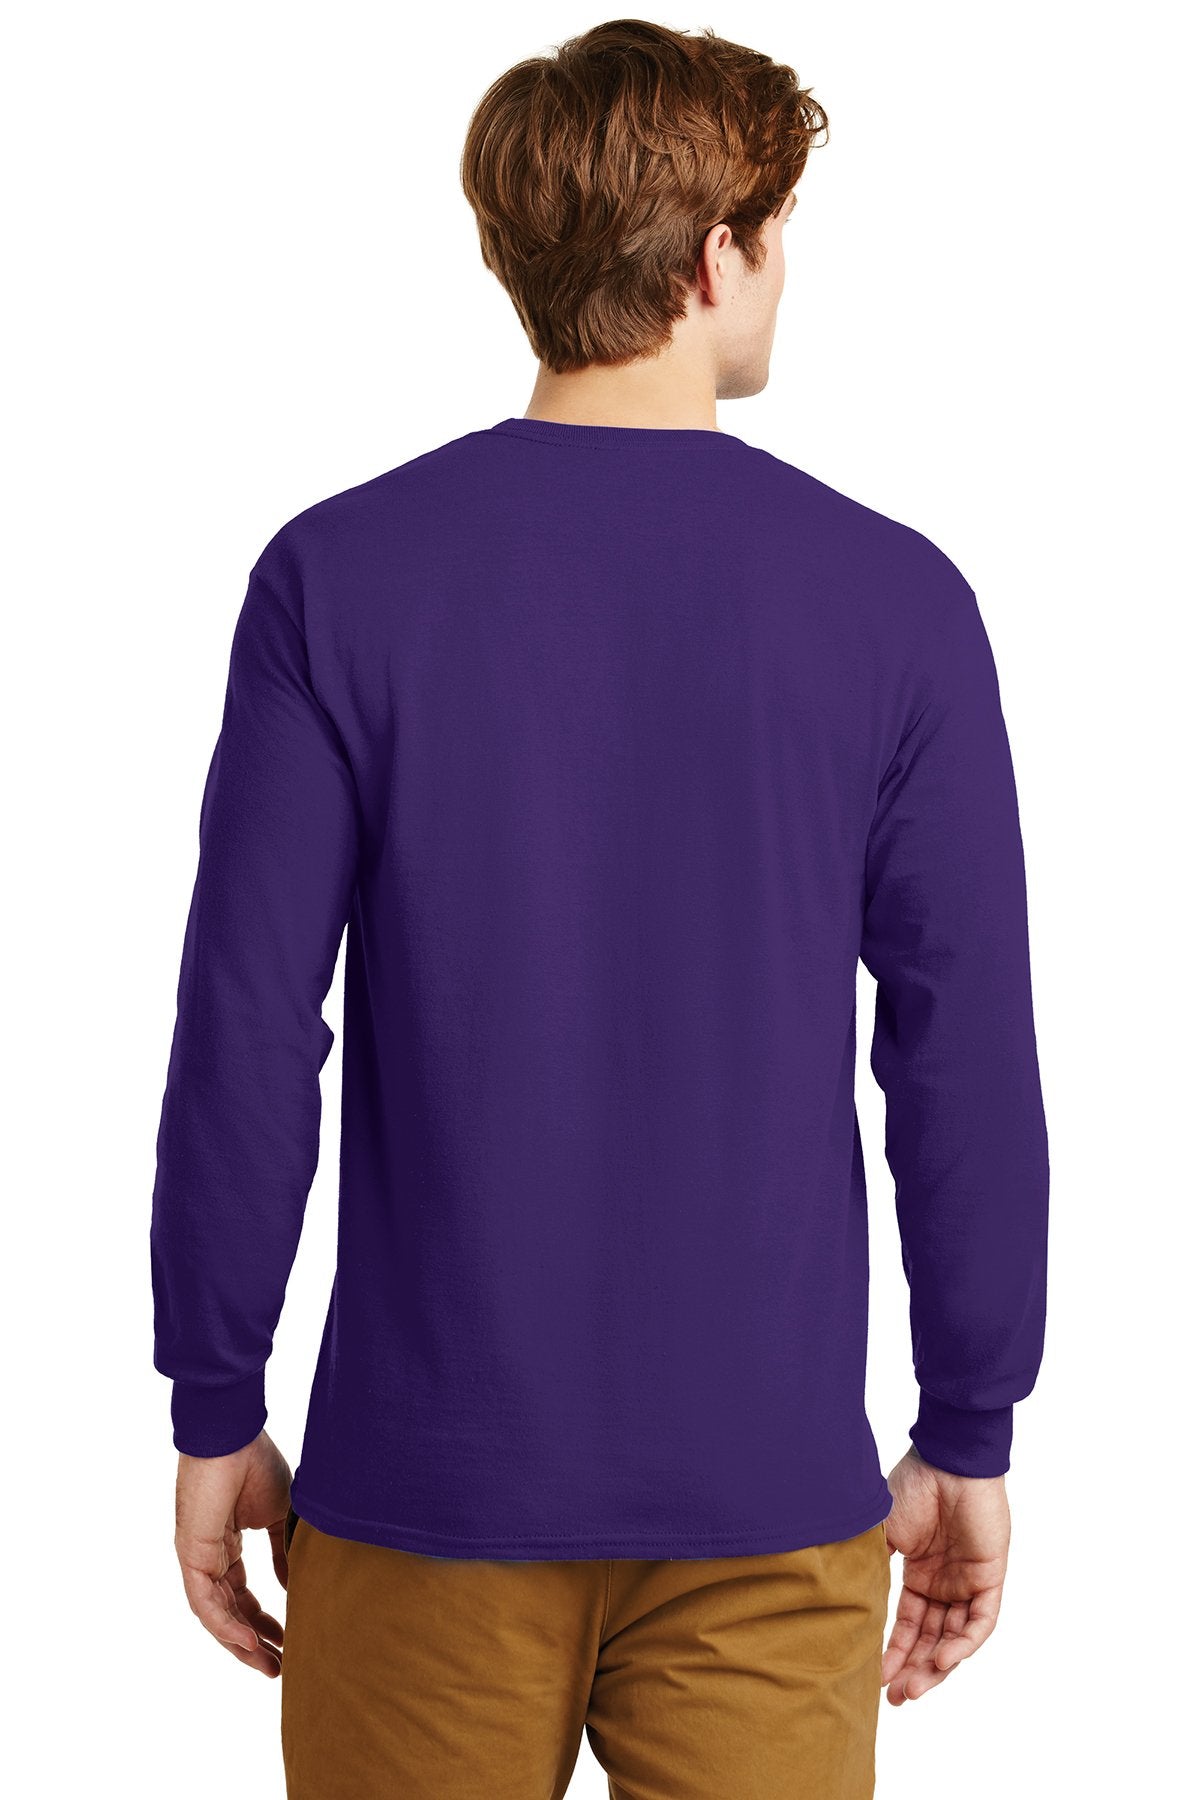 gildan ultra cotton long sleeve t shirt g2400 purple